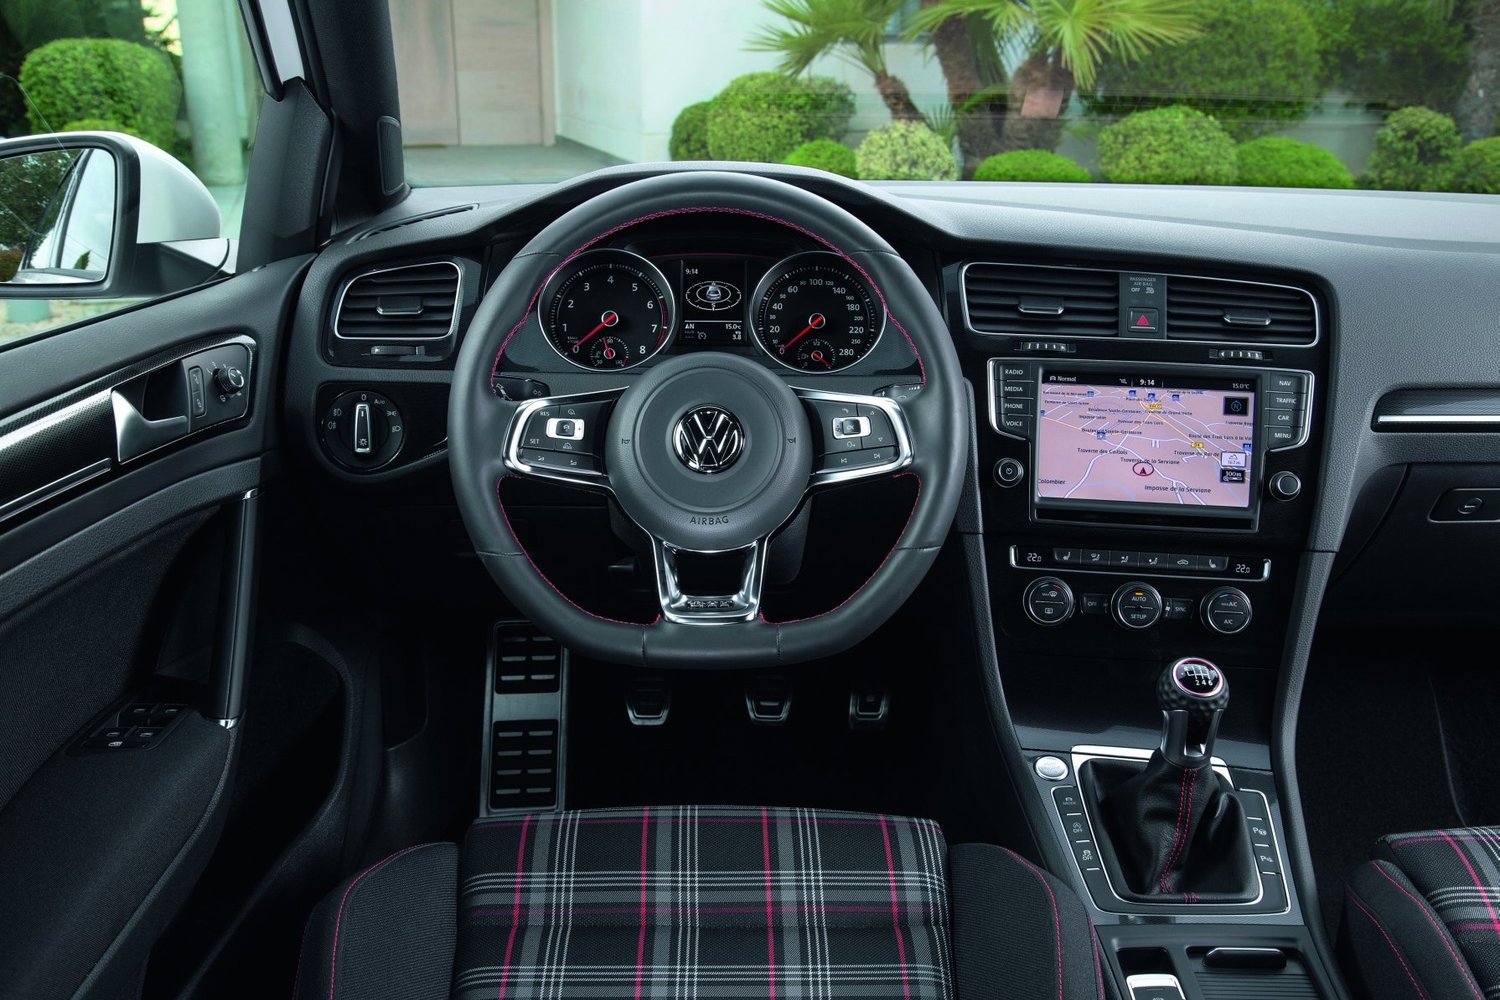 хэтчбек 5 дв. Volkswagen Golf GTI 2013 - 2016г выпуска модификация 2.0 AMT (230 л.с.)